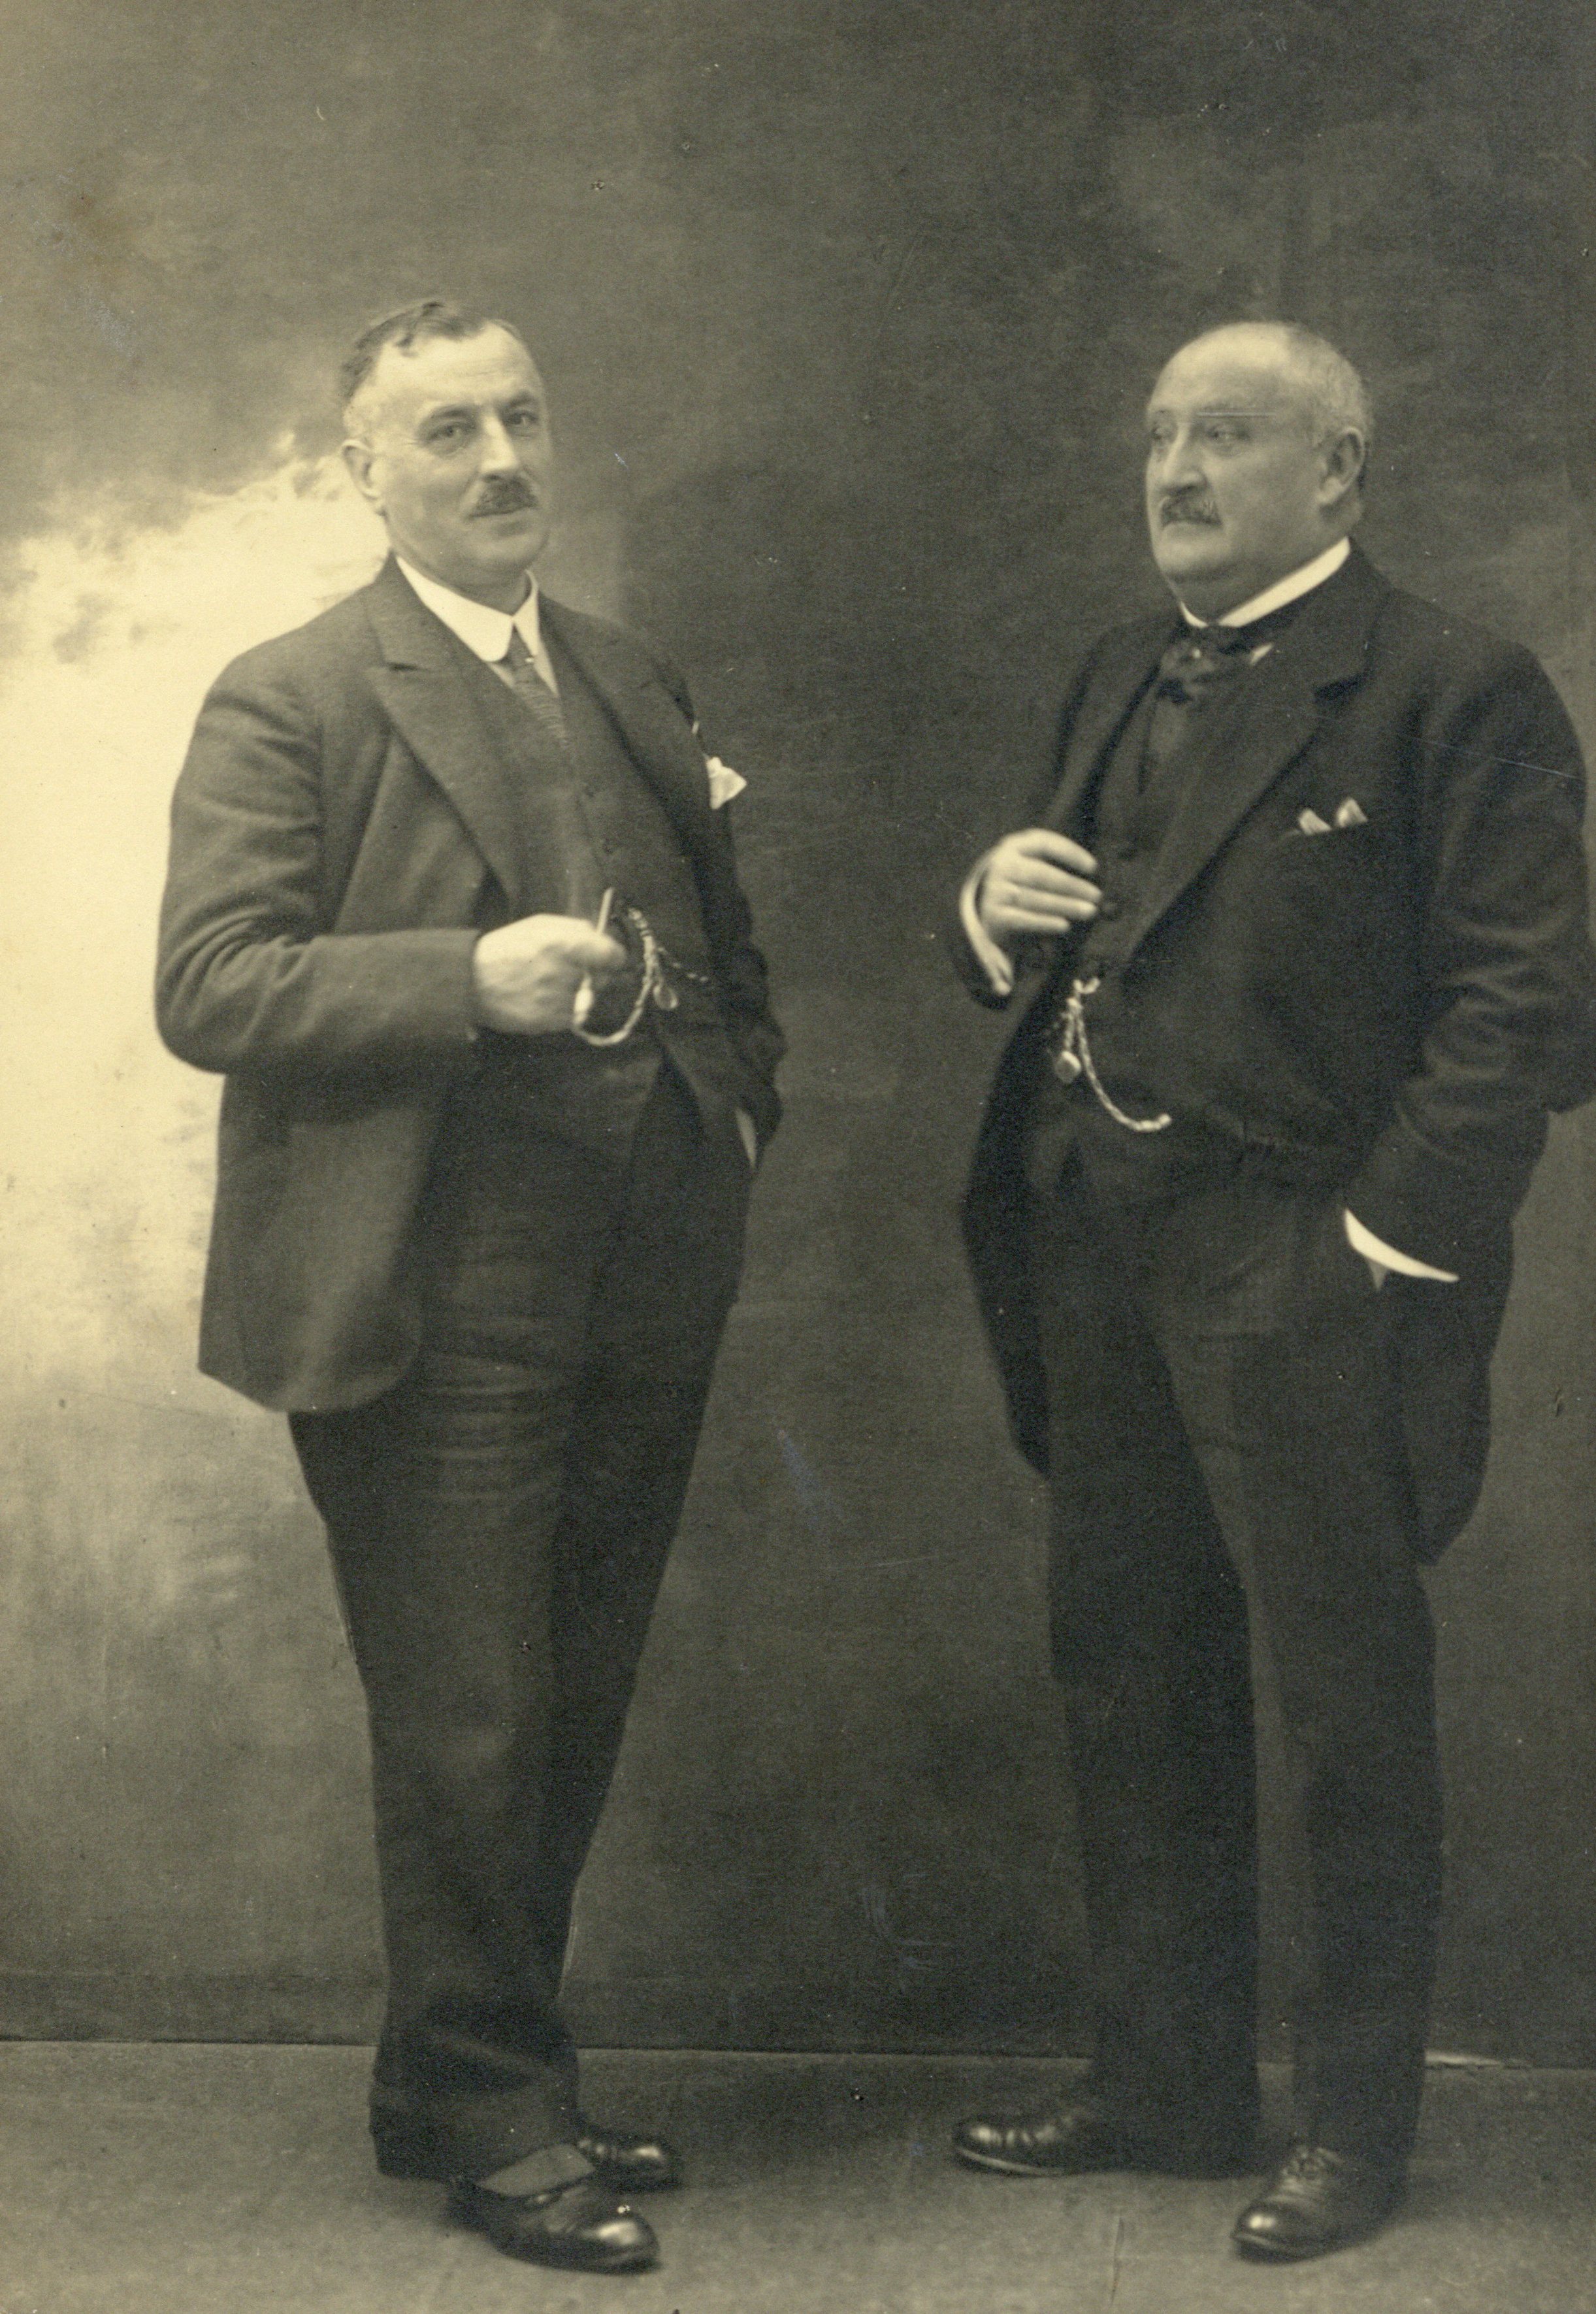 Dubbelportret van Jan Leendert van Eijk en Wilhelmus Heusdens senior, directeuren van Kaashandel Maatschappij 